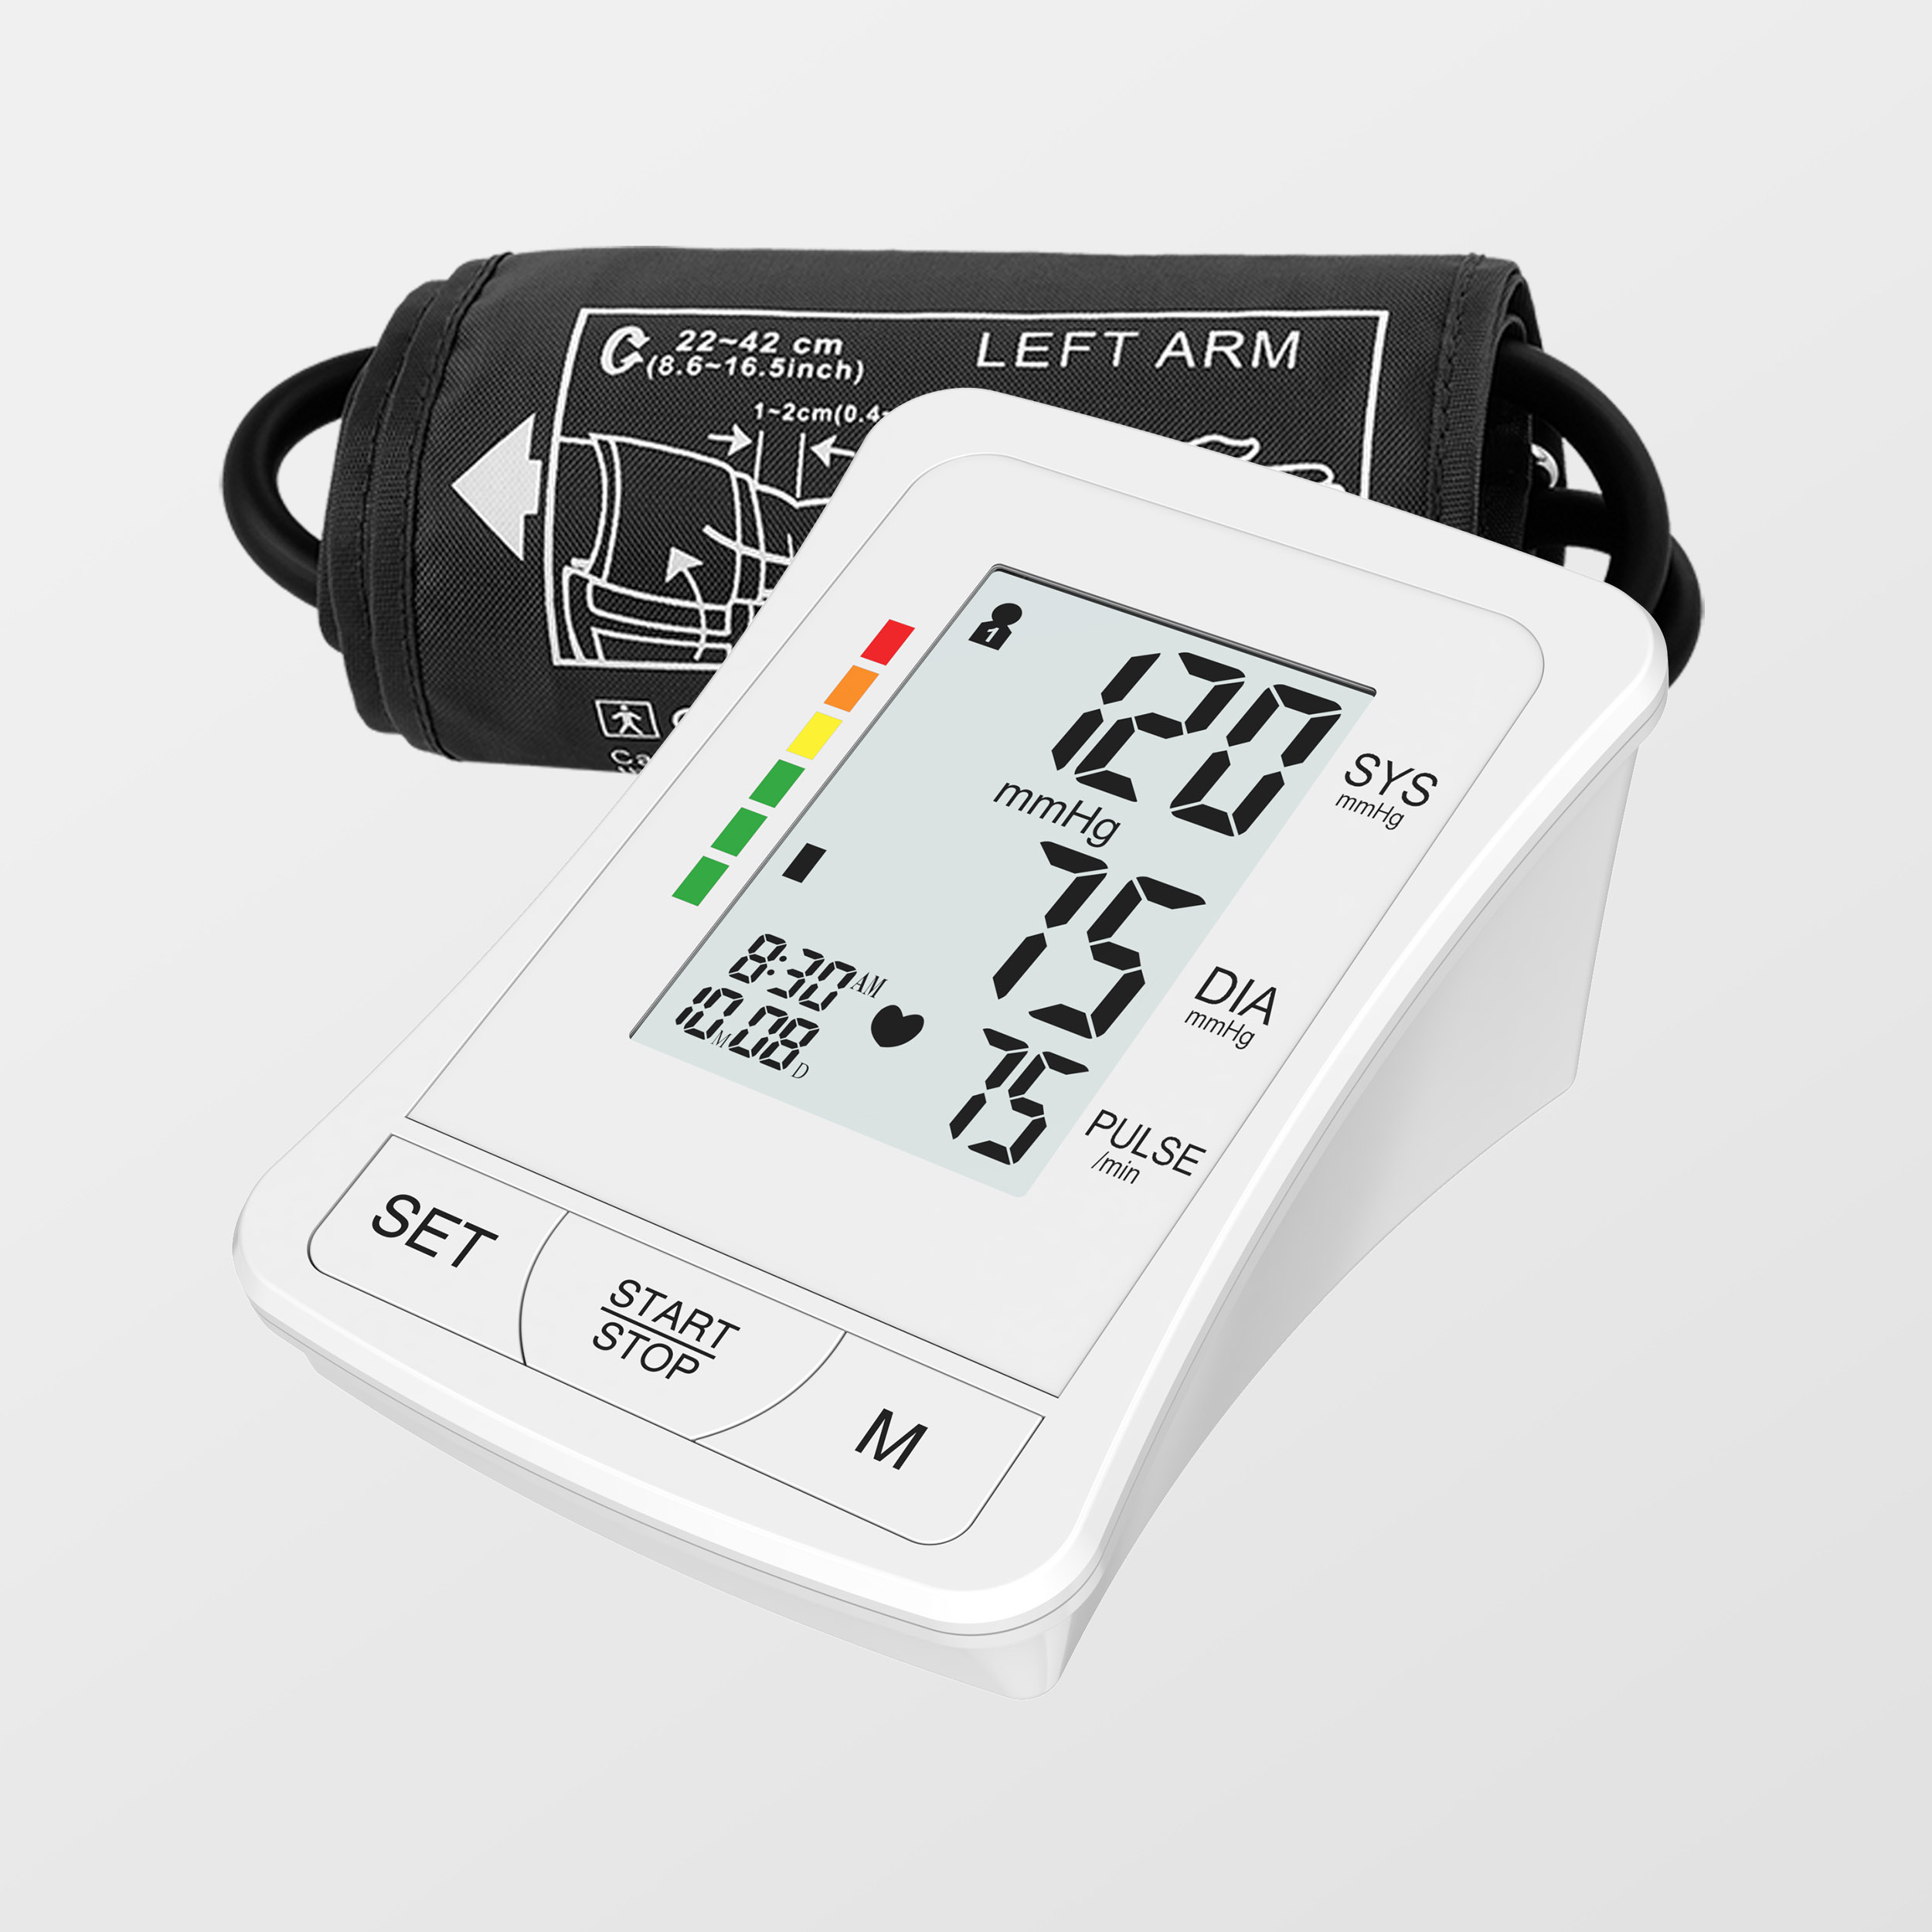 Inne domowe urządzenie do użytku domowego Podświetlana maszyna do sprawdzania wysokiego ciśnienia krwi Monitor ciśnienia krwi Bluetooth